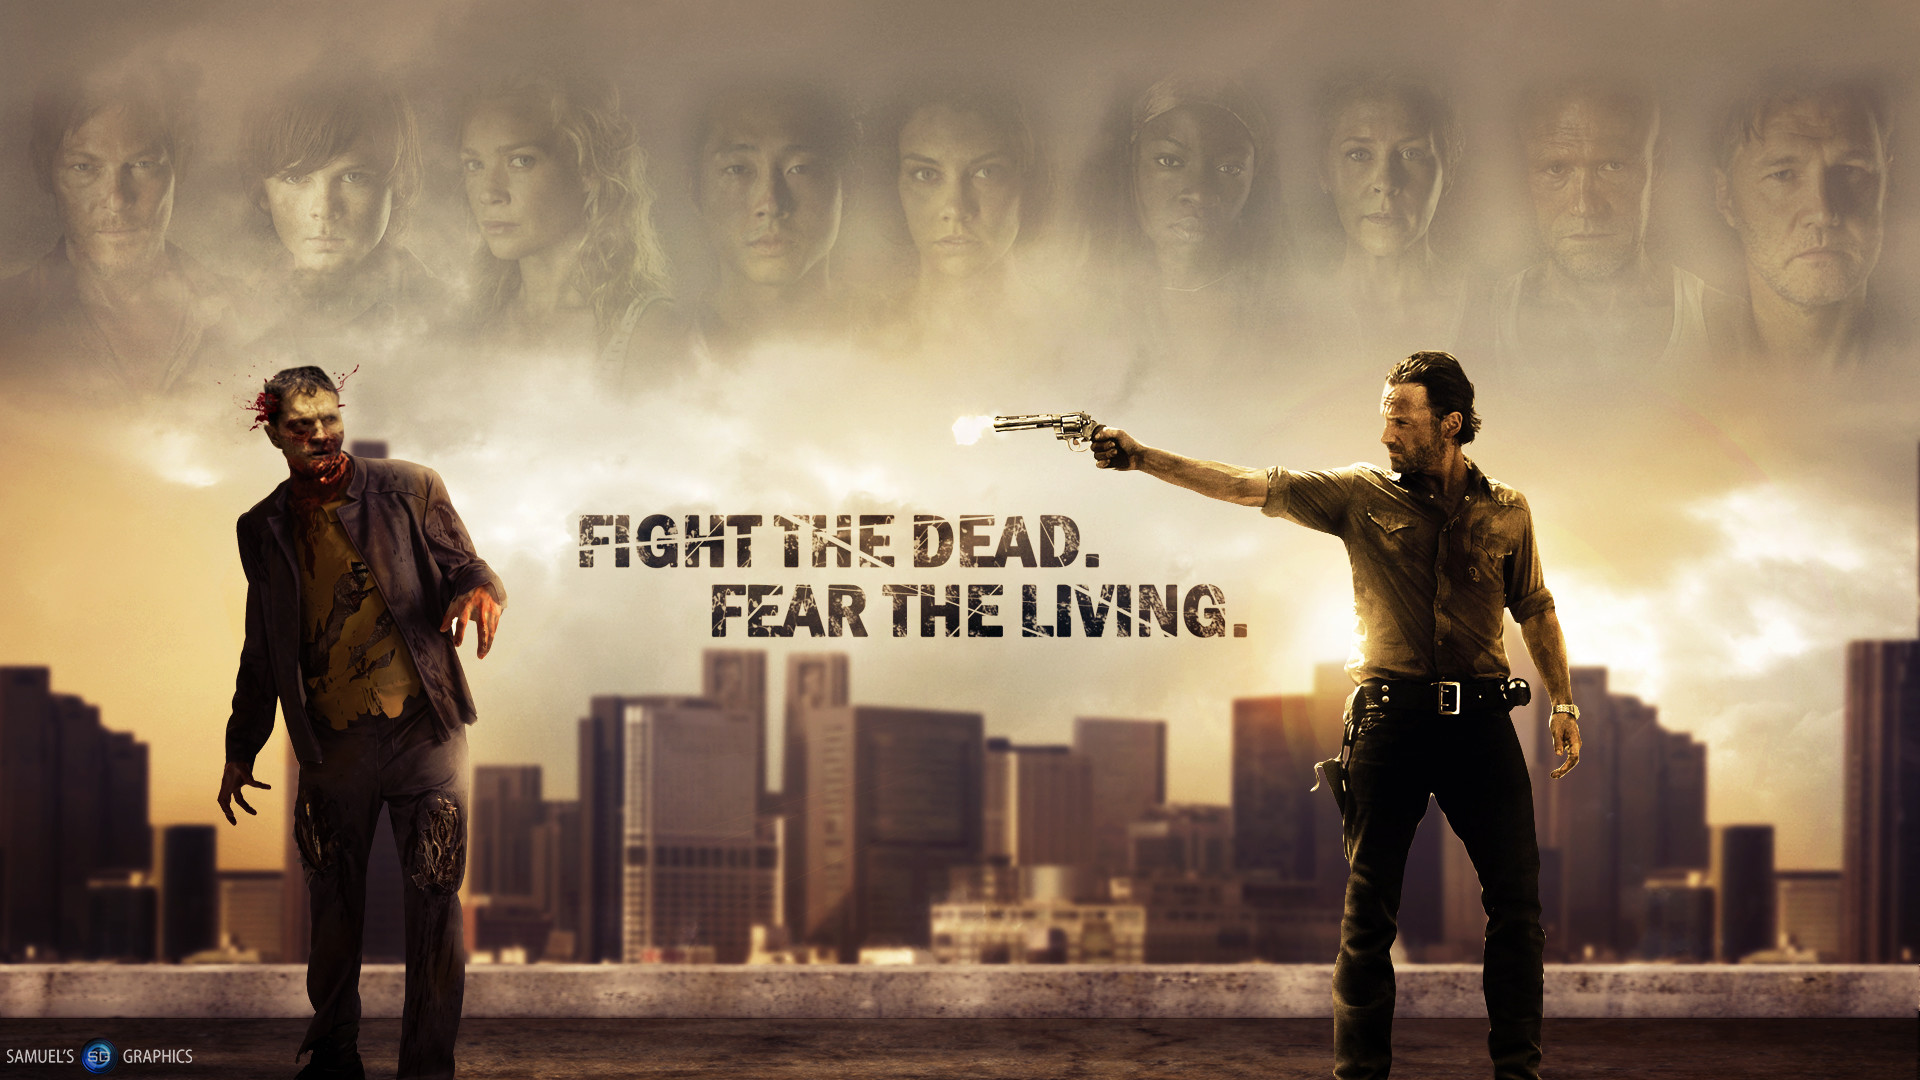 Walking Dead Background Wallpaper (68+